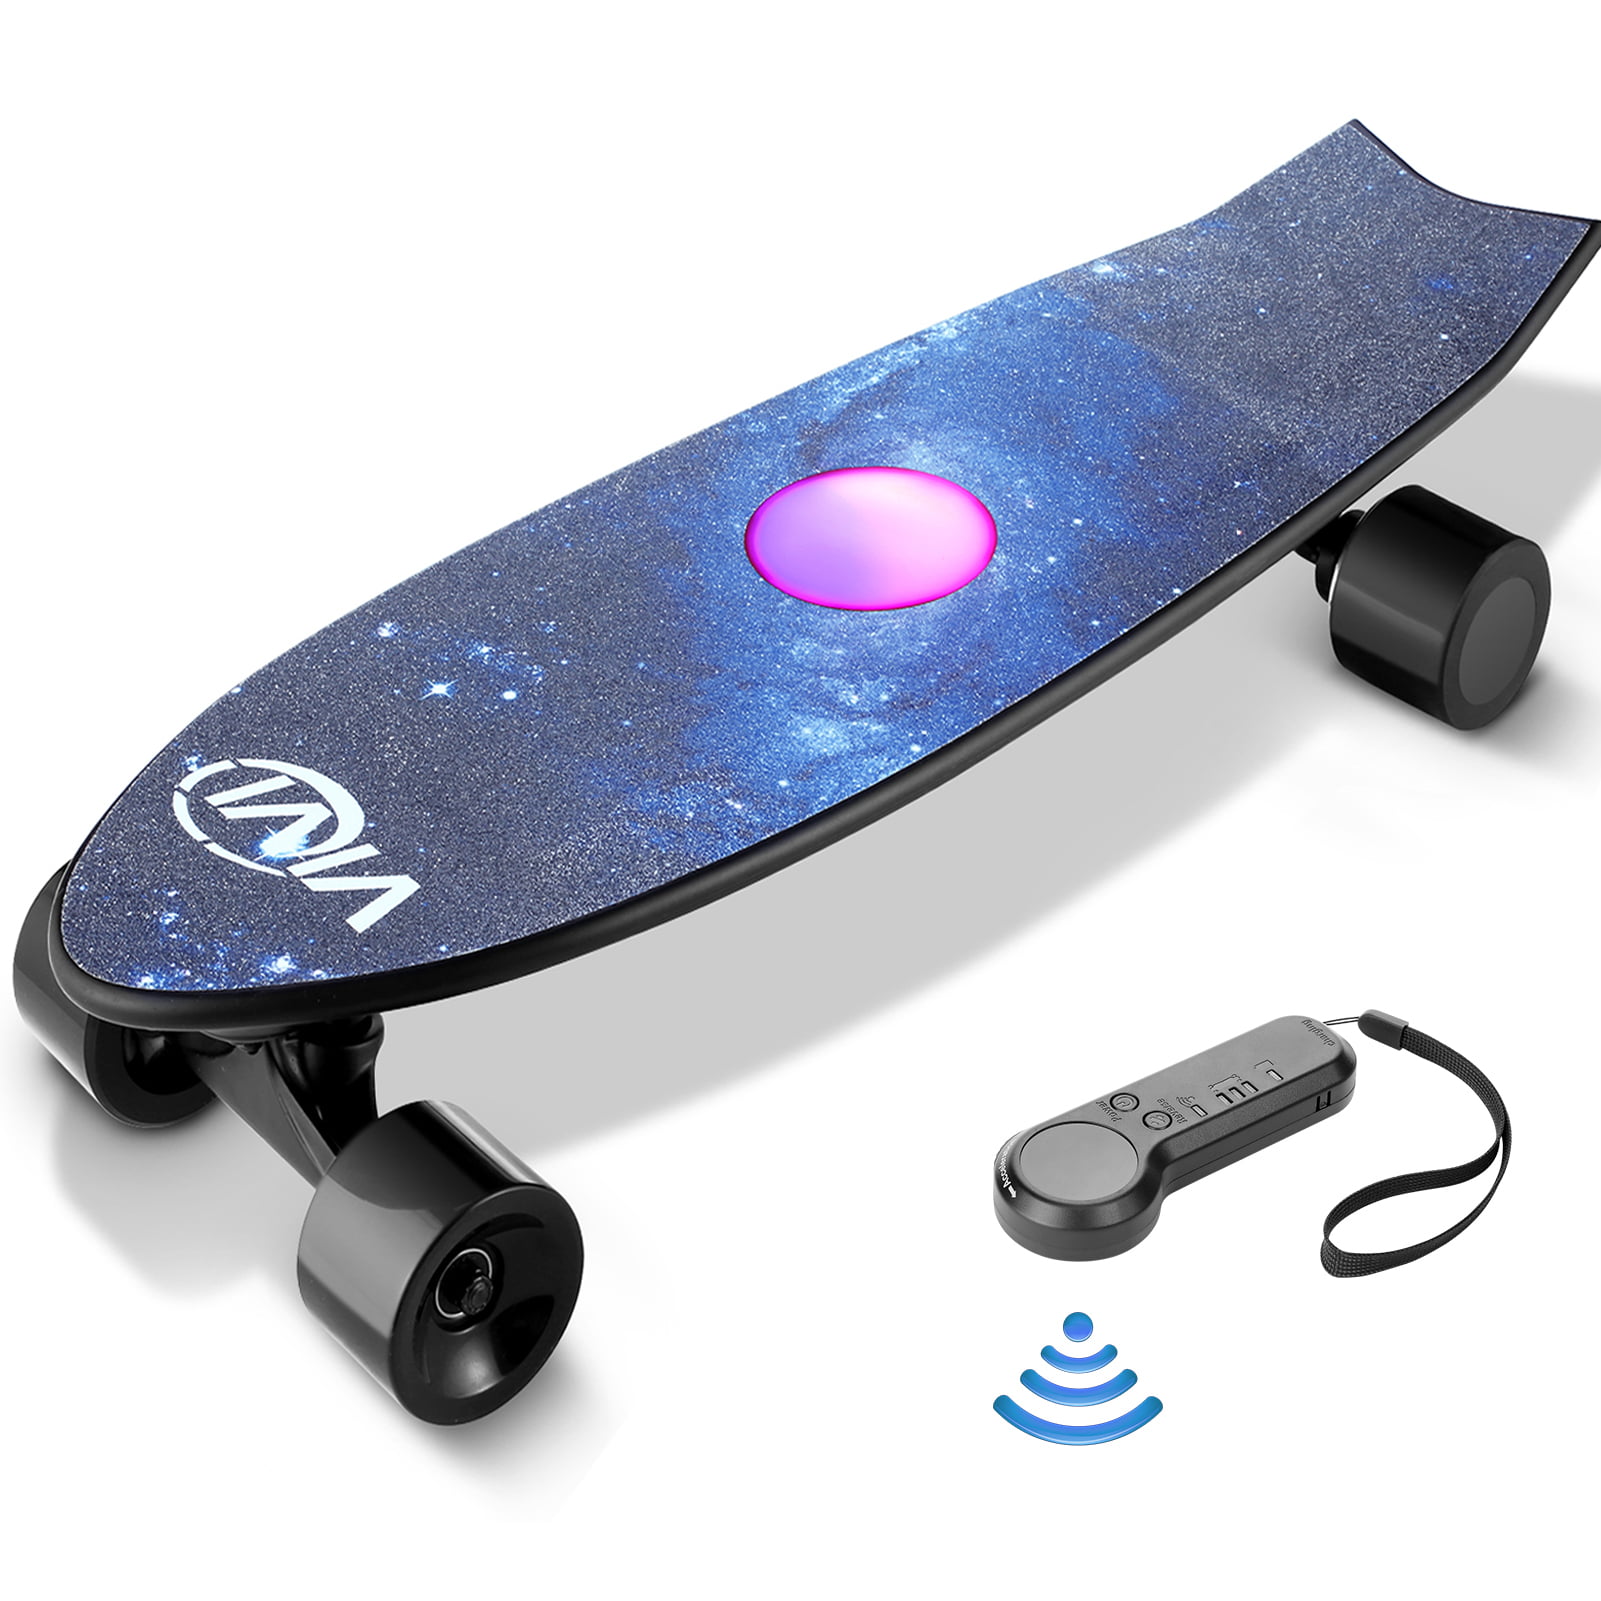 Elektro Skateboard Wireless Longboard Doppelmotor 20km/h mit Fernbedienung DHL 